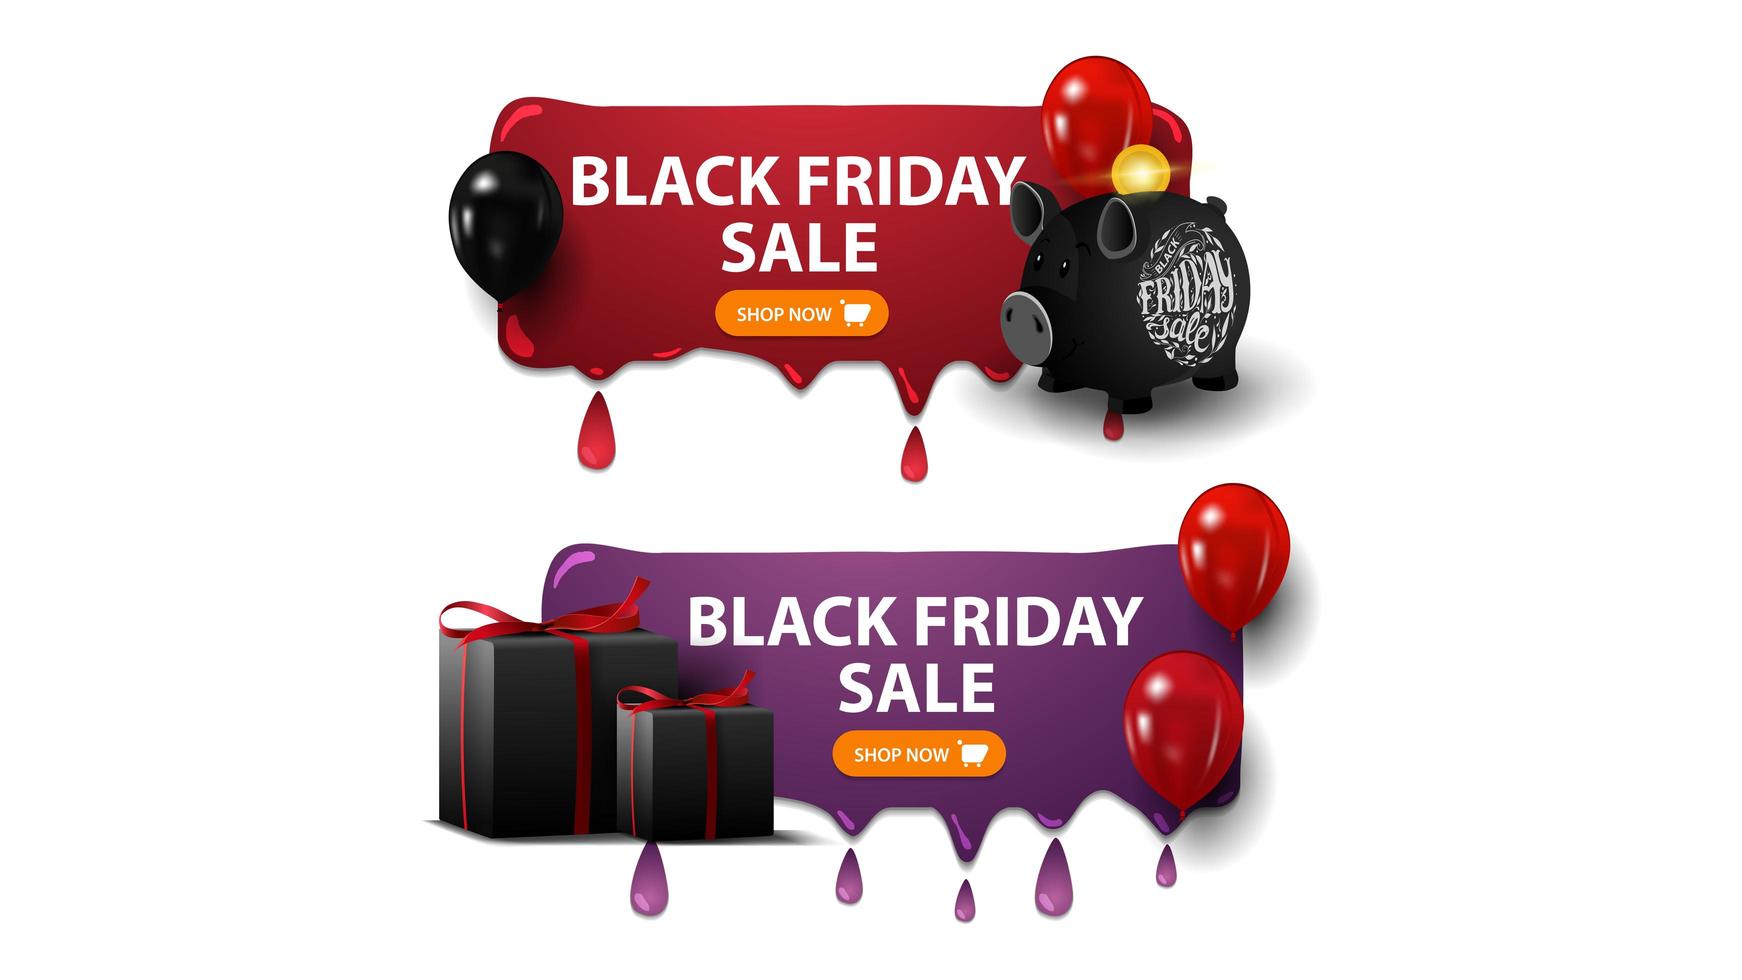 venda de sexta-feira negra, dois banners de descontos horizontais com cofrinho, balões e presentes isolados no fundo branco vetor